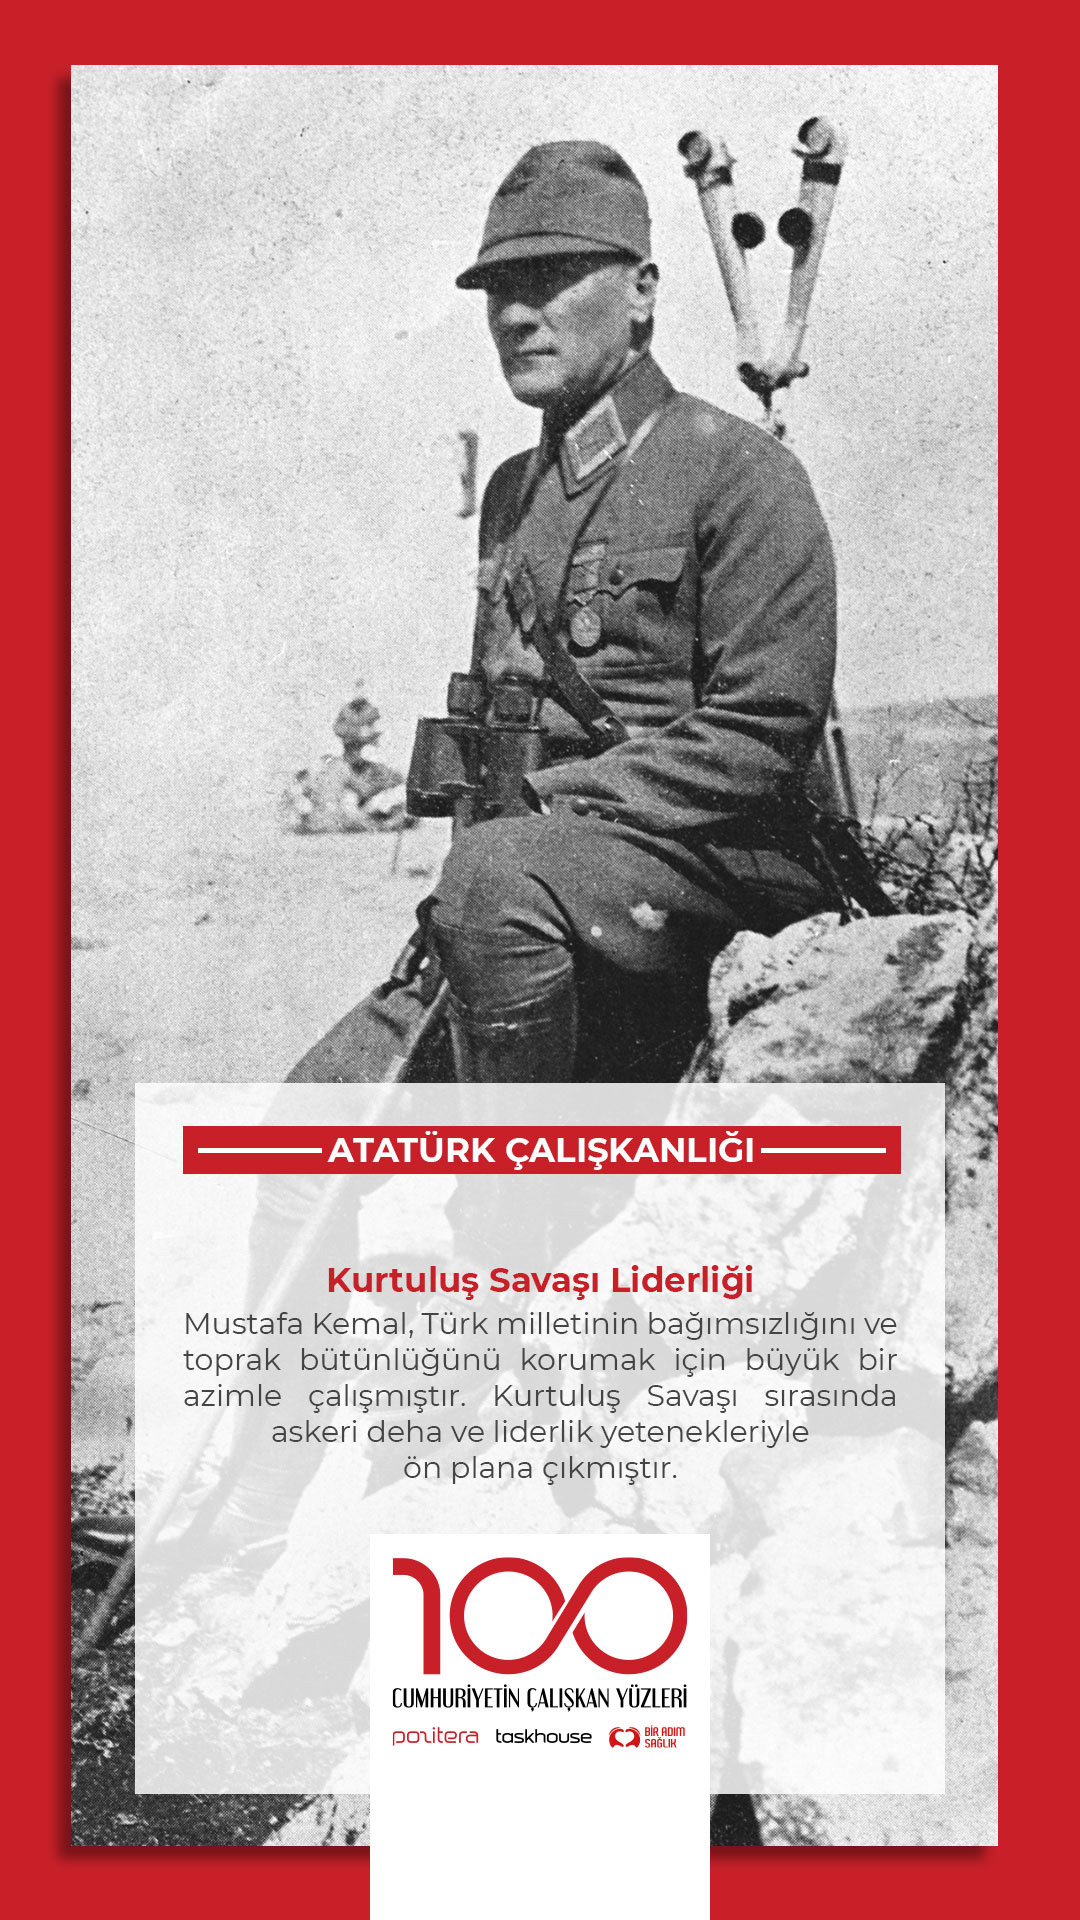 türkiye cumhuriyet türkiye cumhuriyeti 29 ekim Ataturk Mustafa Kemal Atatürk 10 kasım 30 Ağustos 100Yil 100yıl